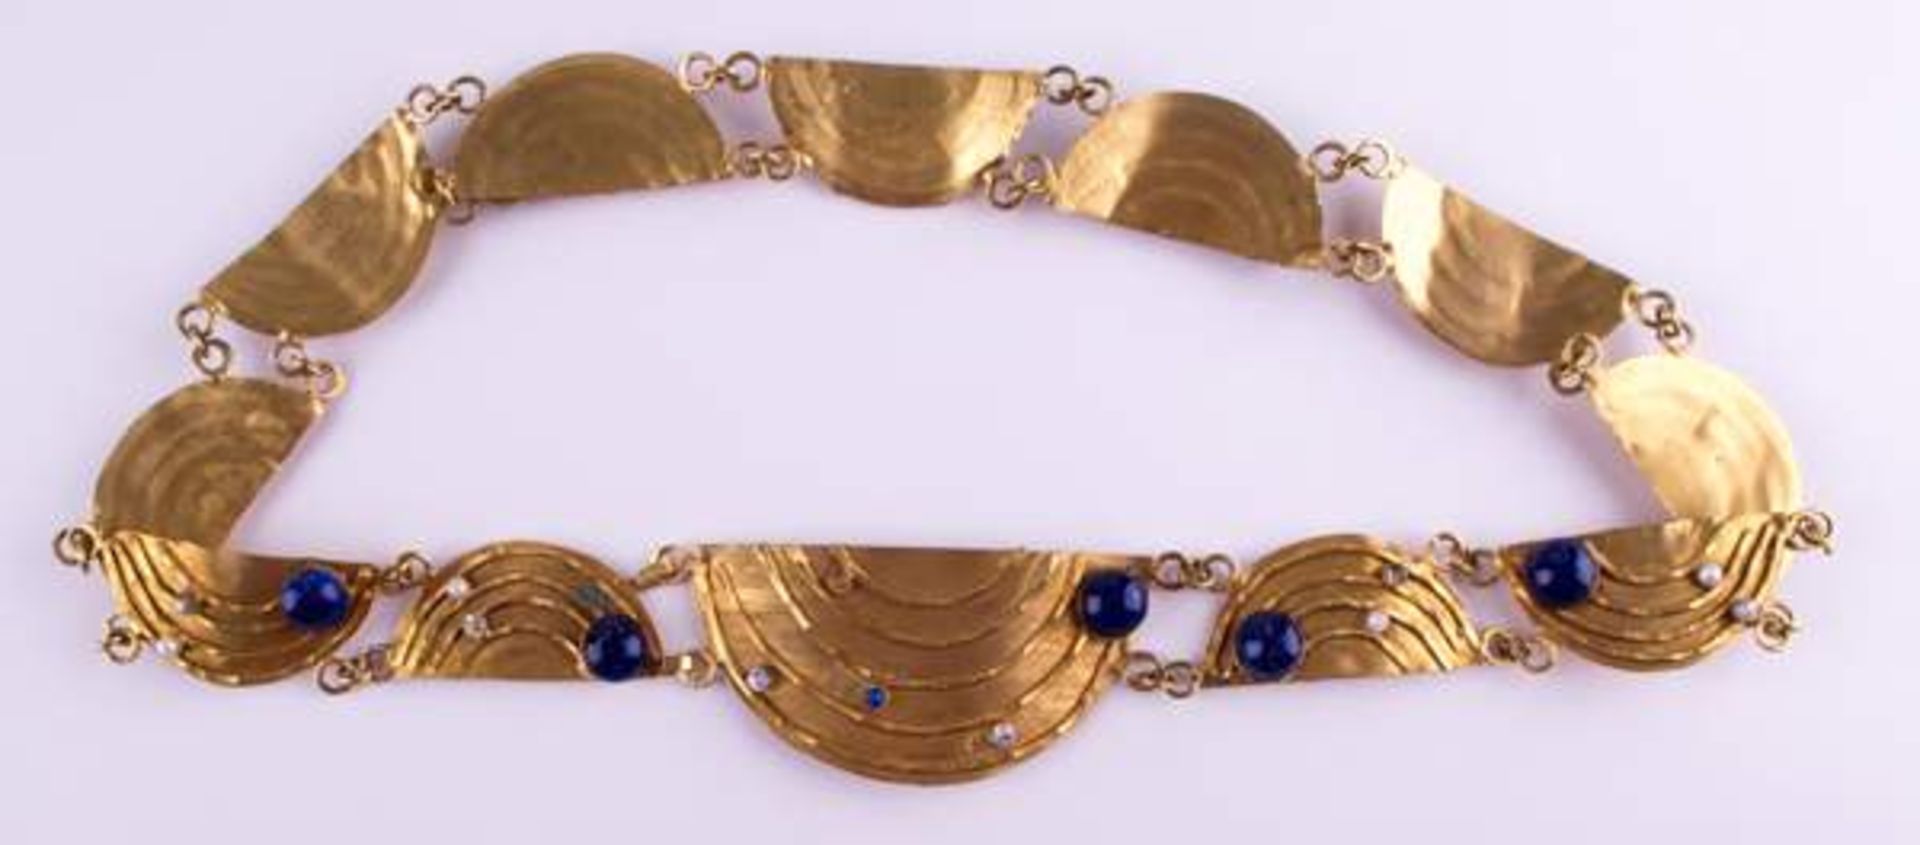 Schmuckgürtel Arabisch / Jewellery belt, Arabianmit verschiedenem Steinbesatz, Lapislazuli, echte - Bild 3 aus 6